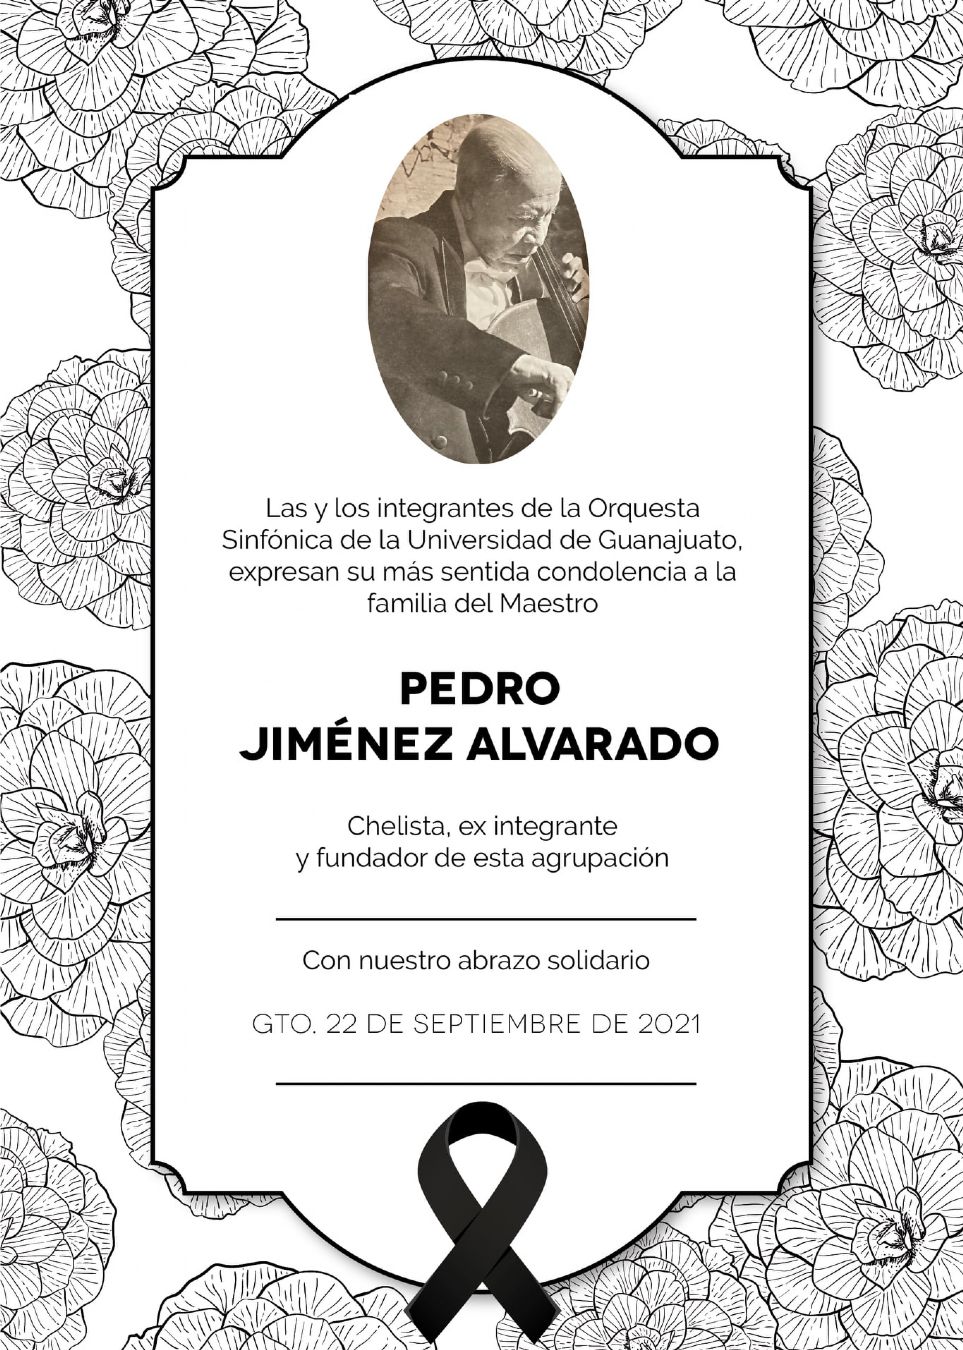 Pedro Jimnez Alvarado